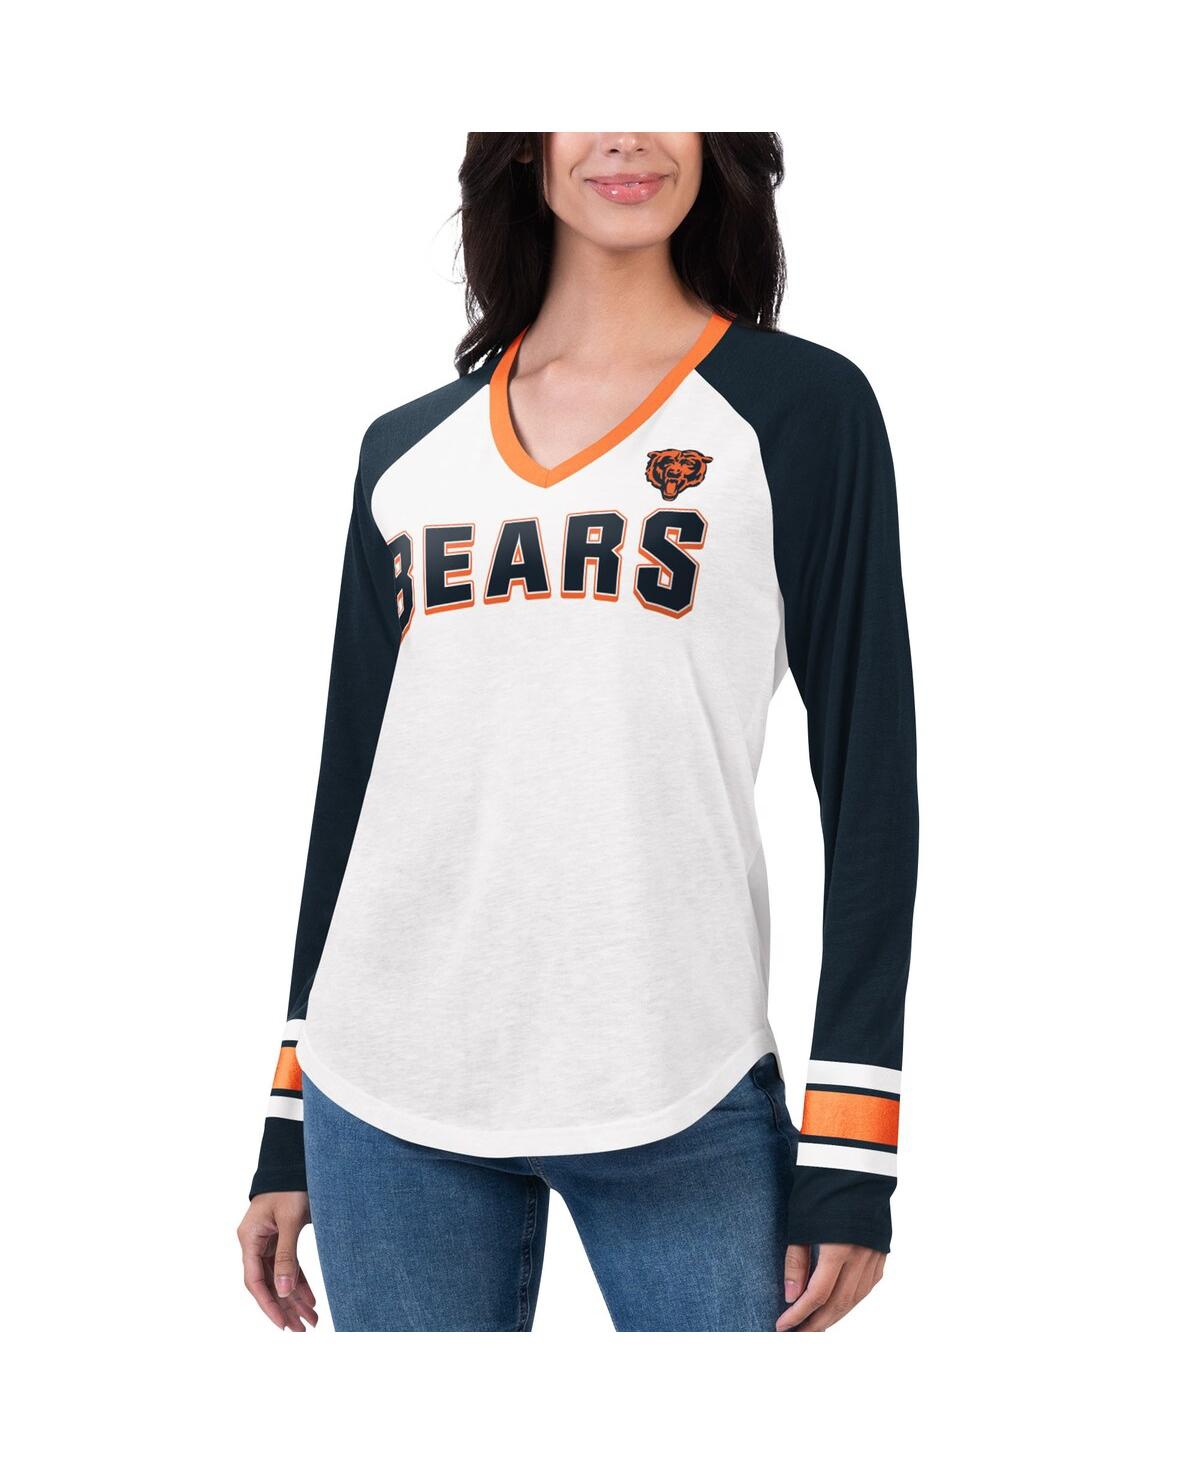 Women's G-iii 4Her by Carl Banks White, Navy Chicago Bears Top Team Raglan V-Neck Long Sleeve T-shirt - White, Navy